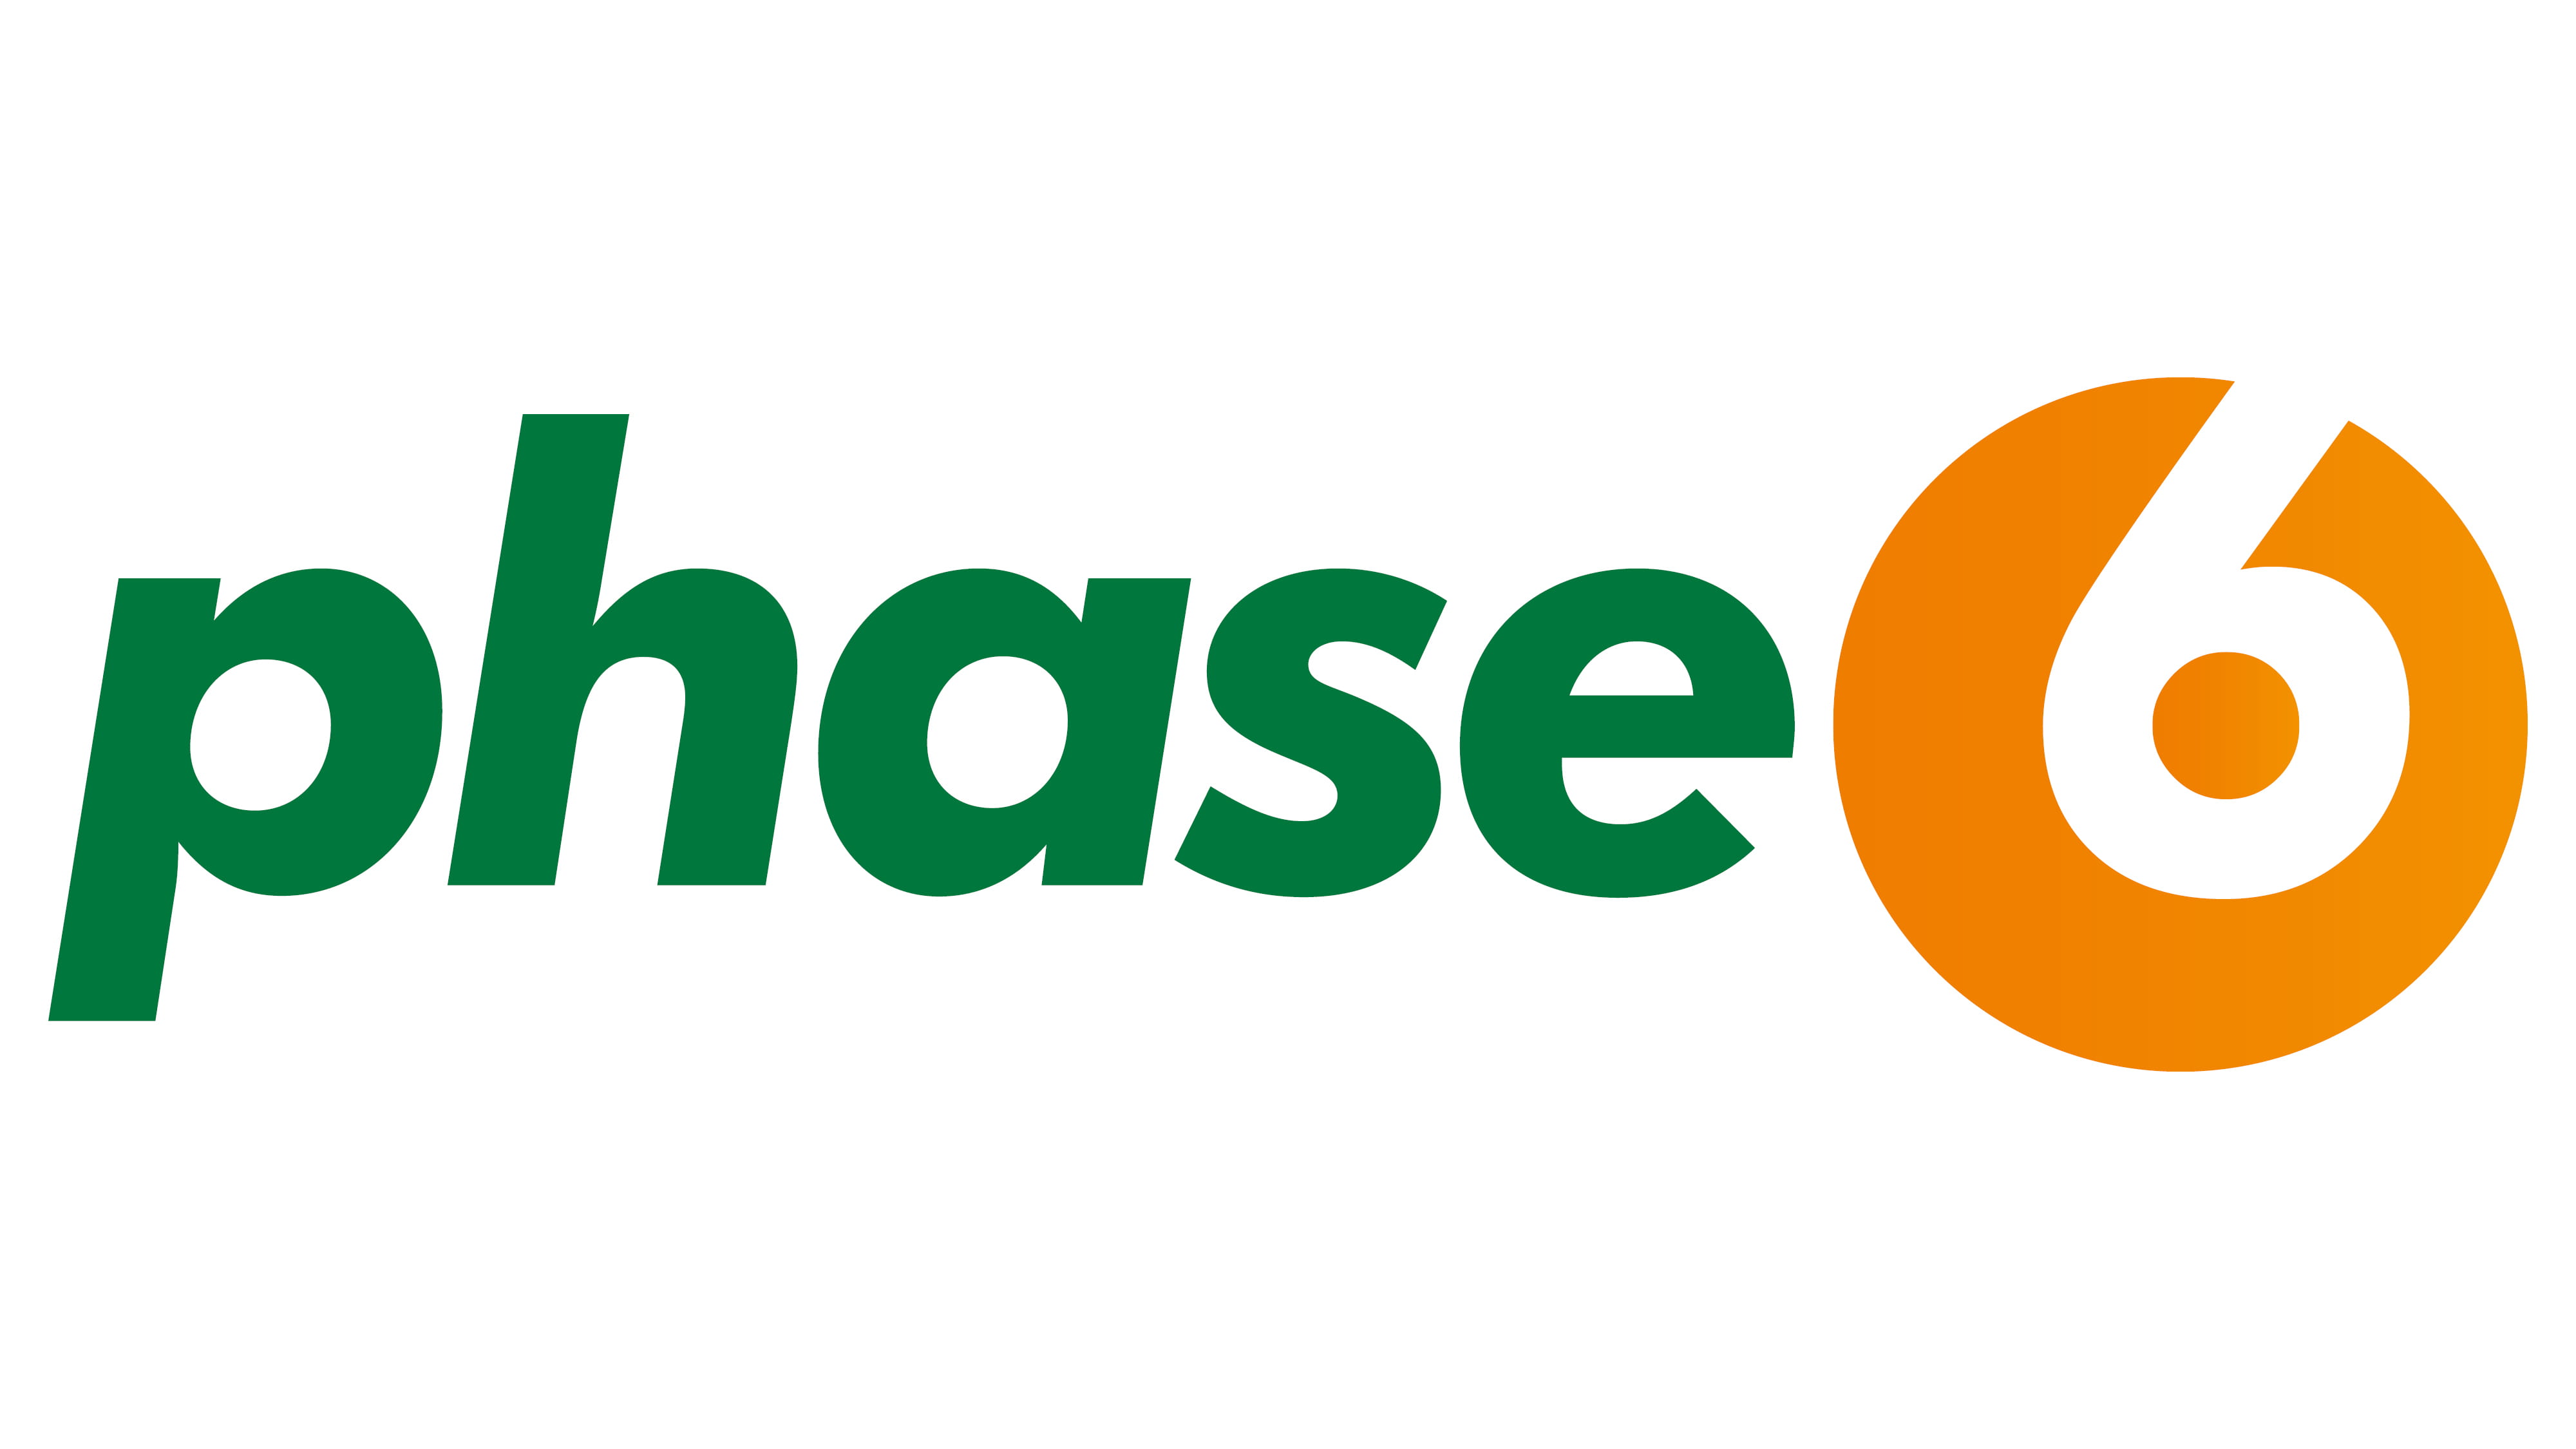 Logo phase6